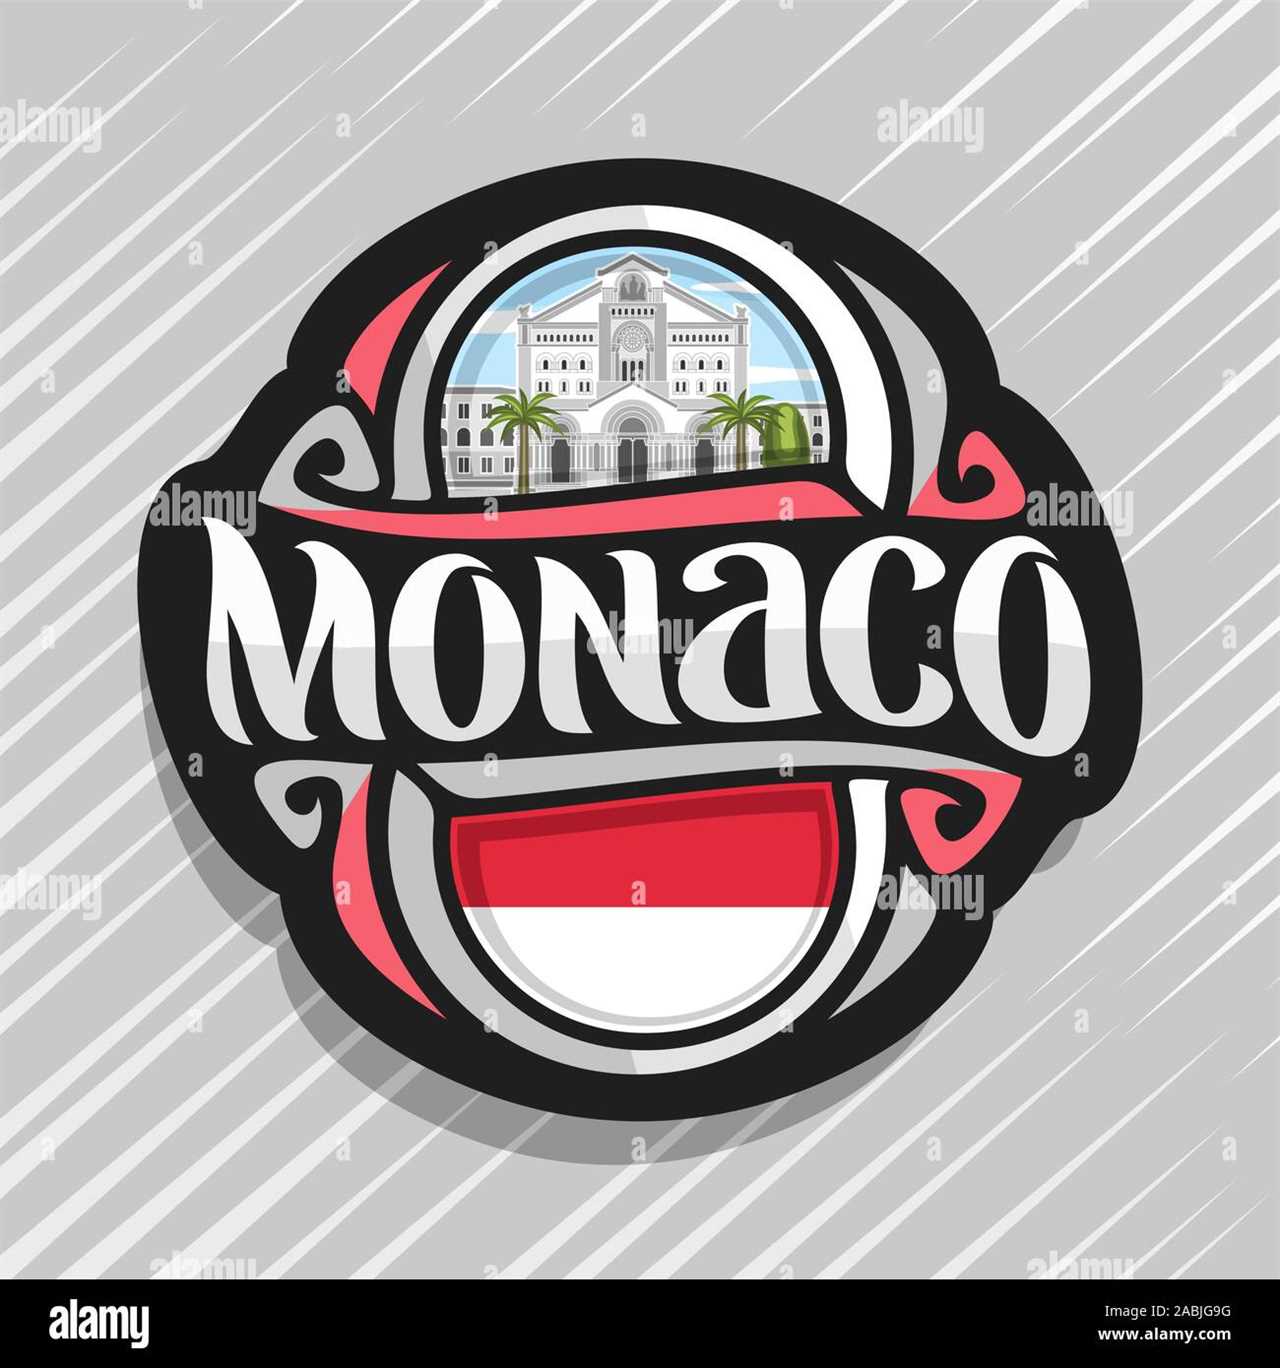 Le logo de Monaco et l'innovation